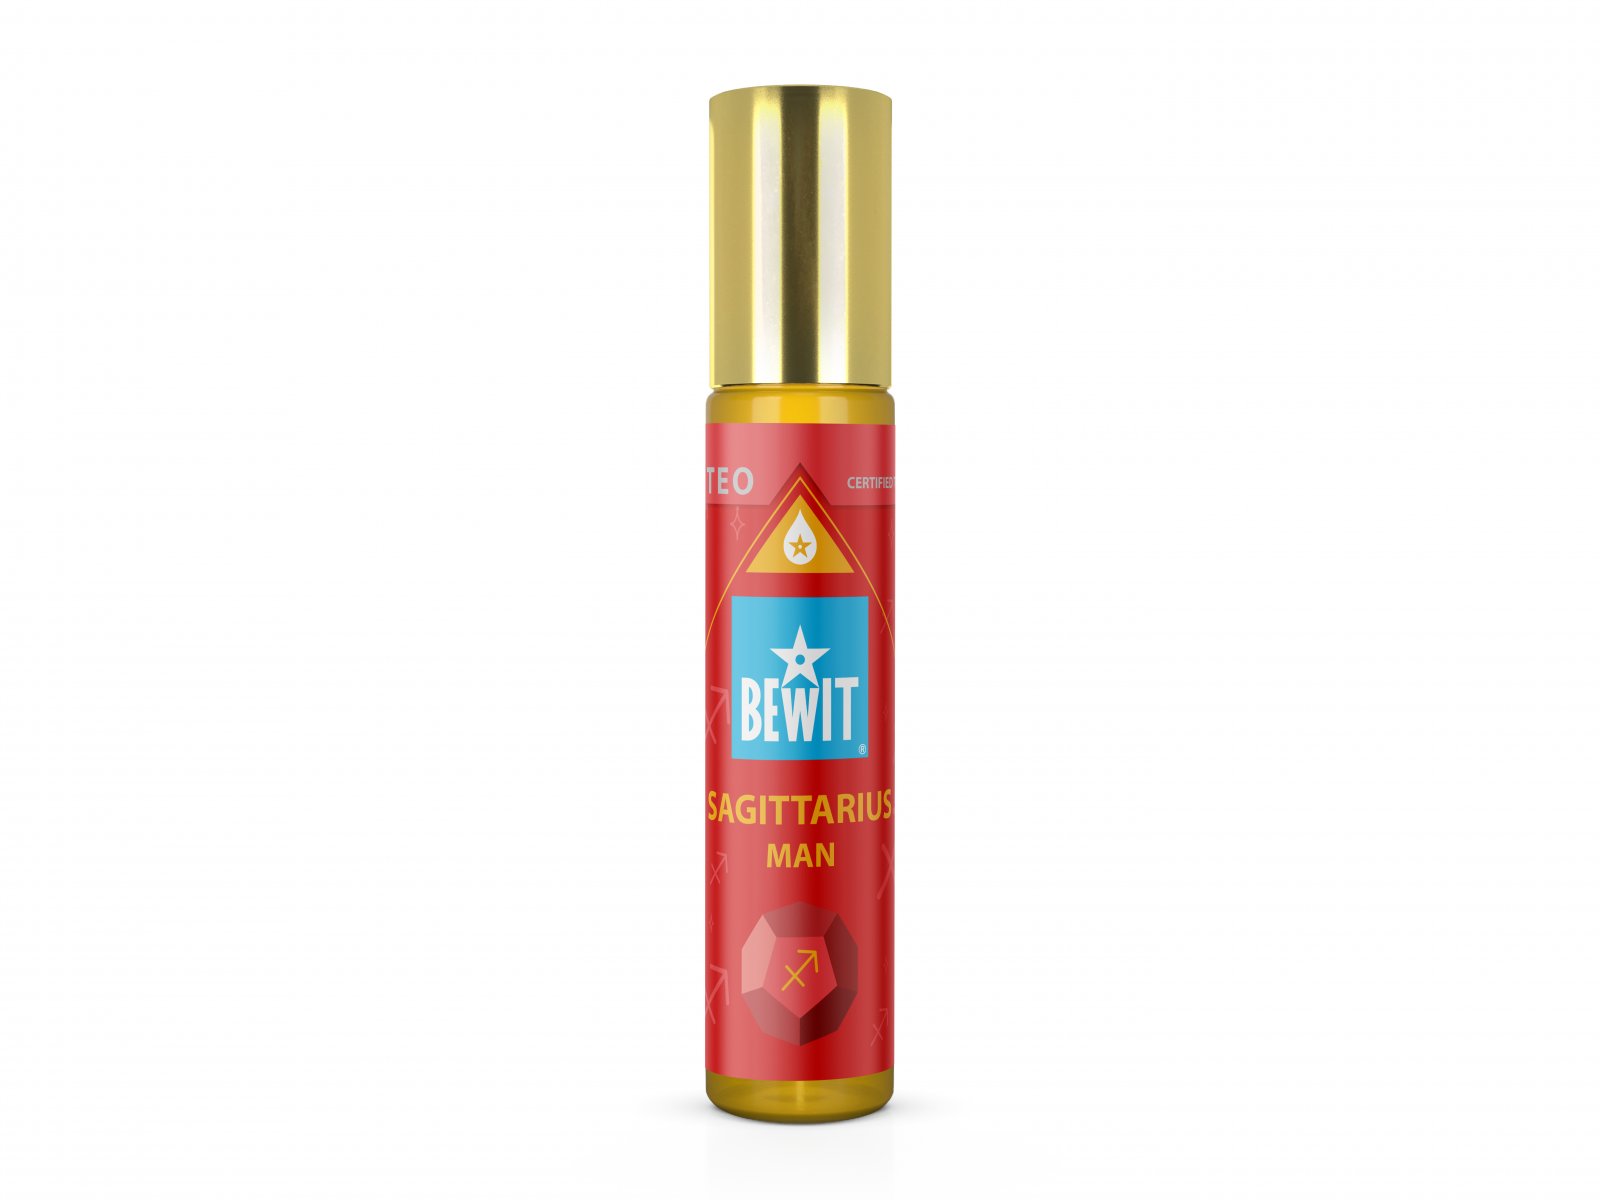 BEWIT® MAN SAGITTARIUS (THE CENTAUR) - Men's roll-on oil perfume